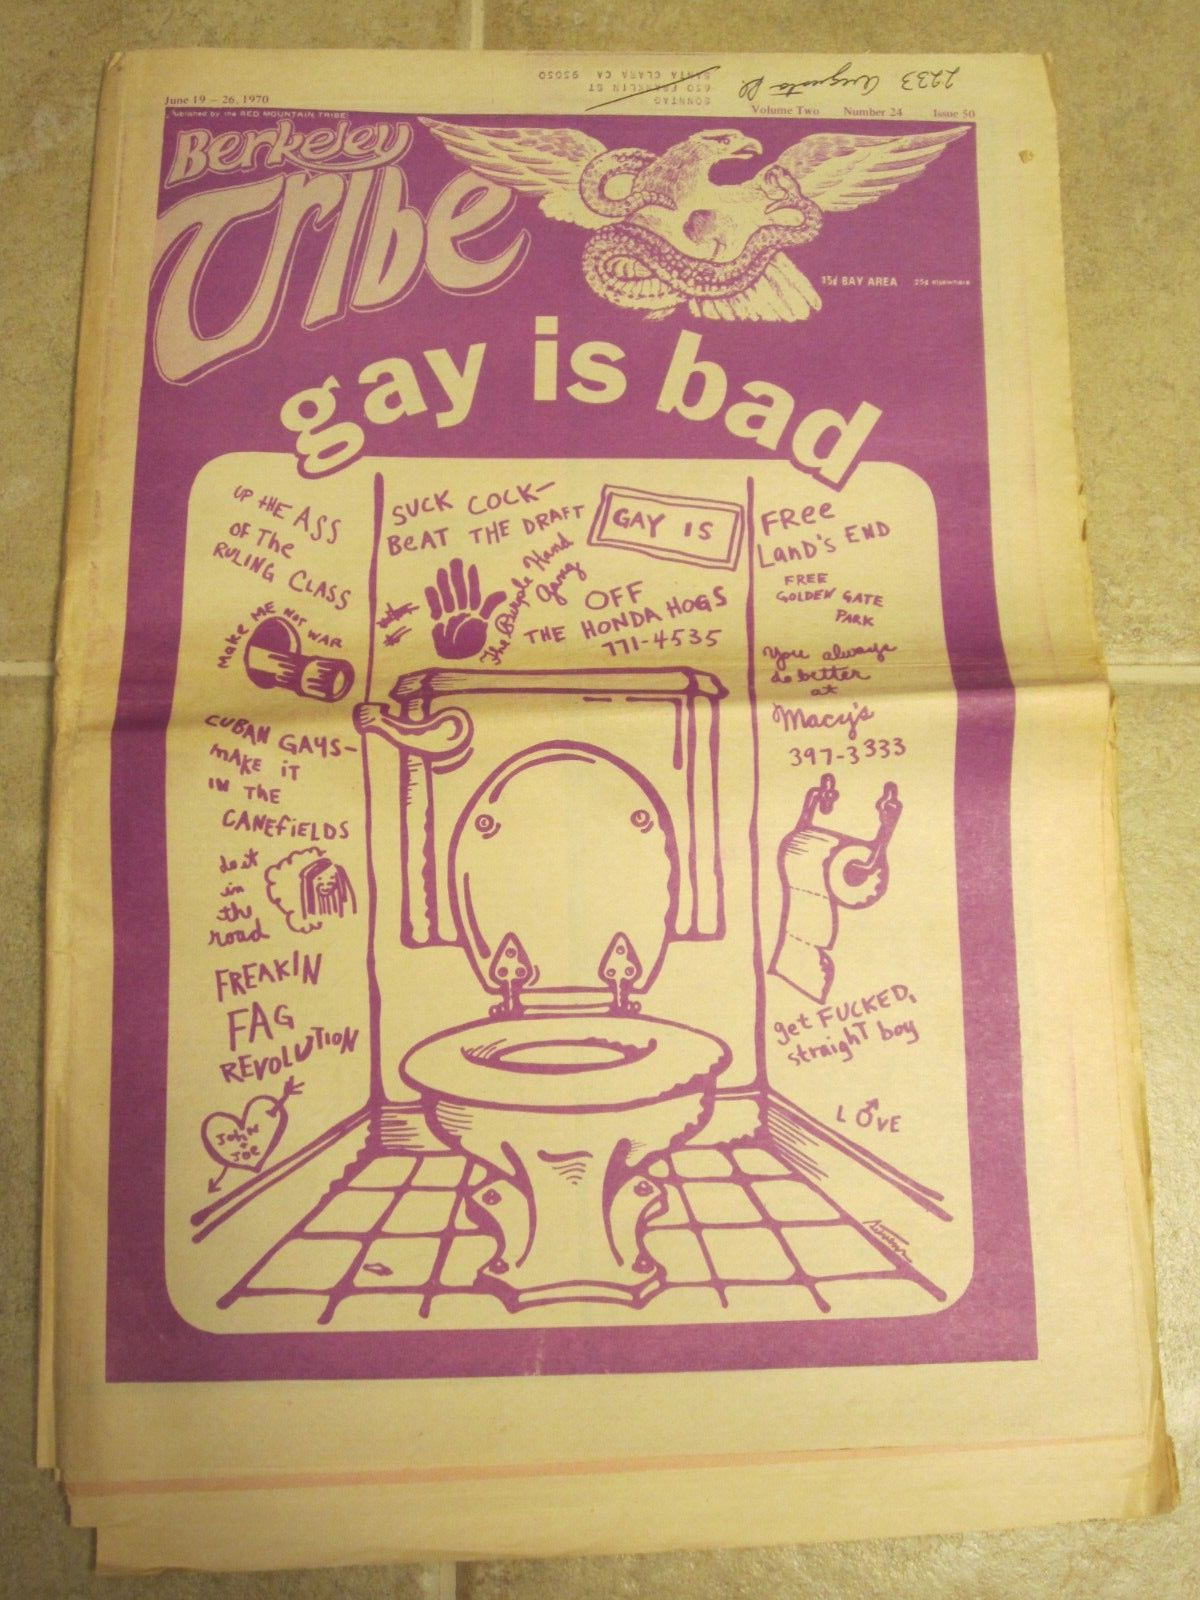 Berkeley Tribe Newspaper June 1970 Gay is Bad Lesbians as Women